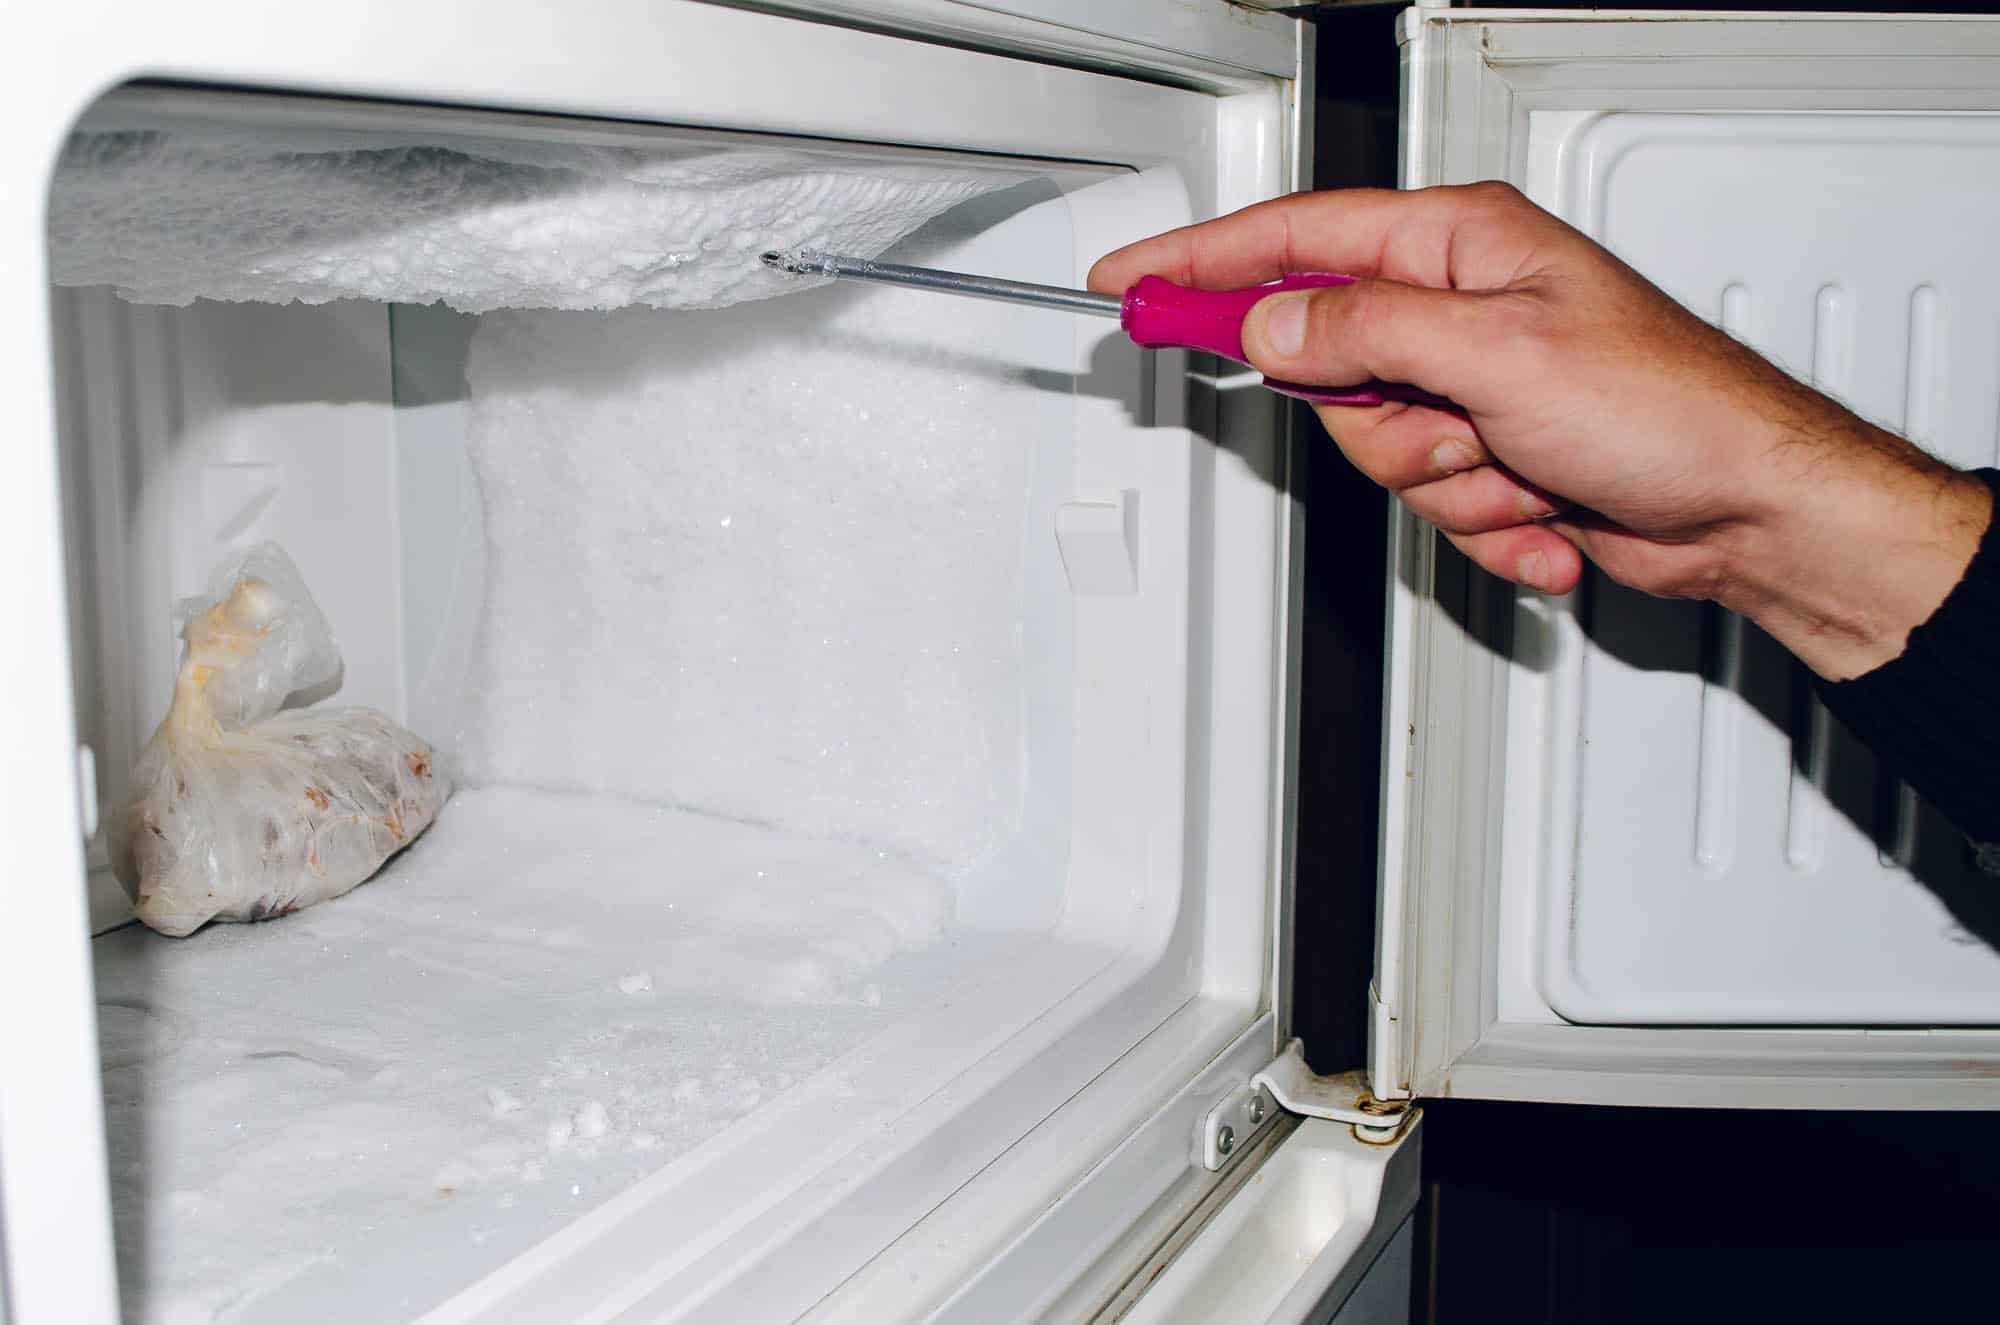 Какой холодильник лучше выбрать: капельный или ноу фрост?